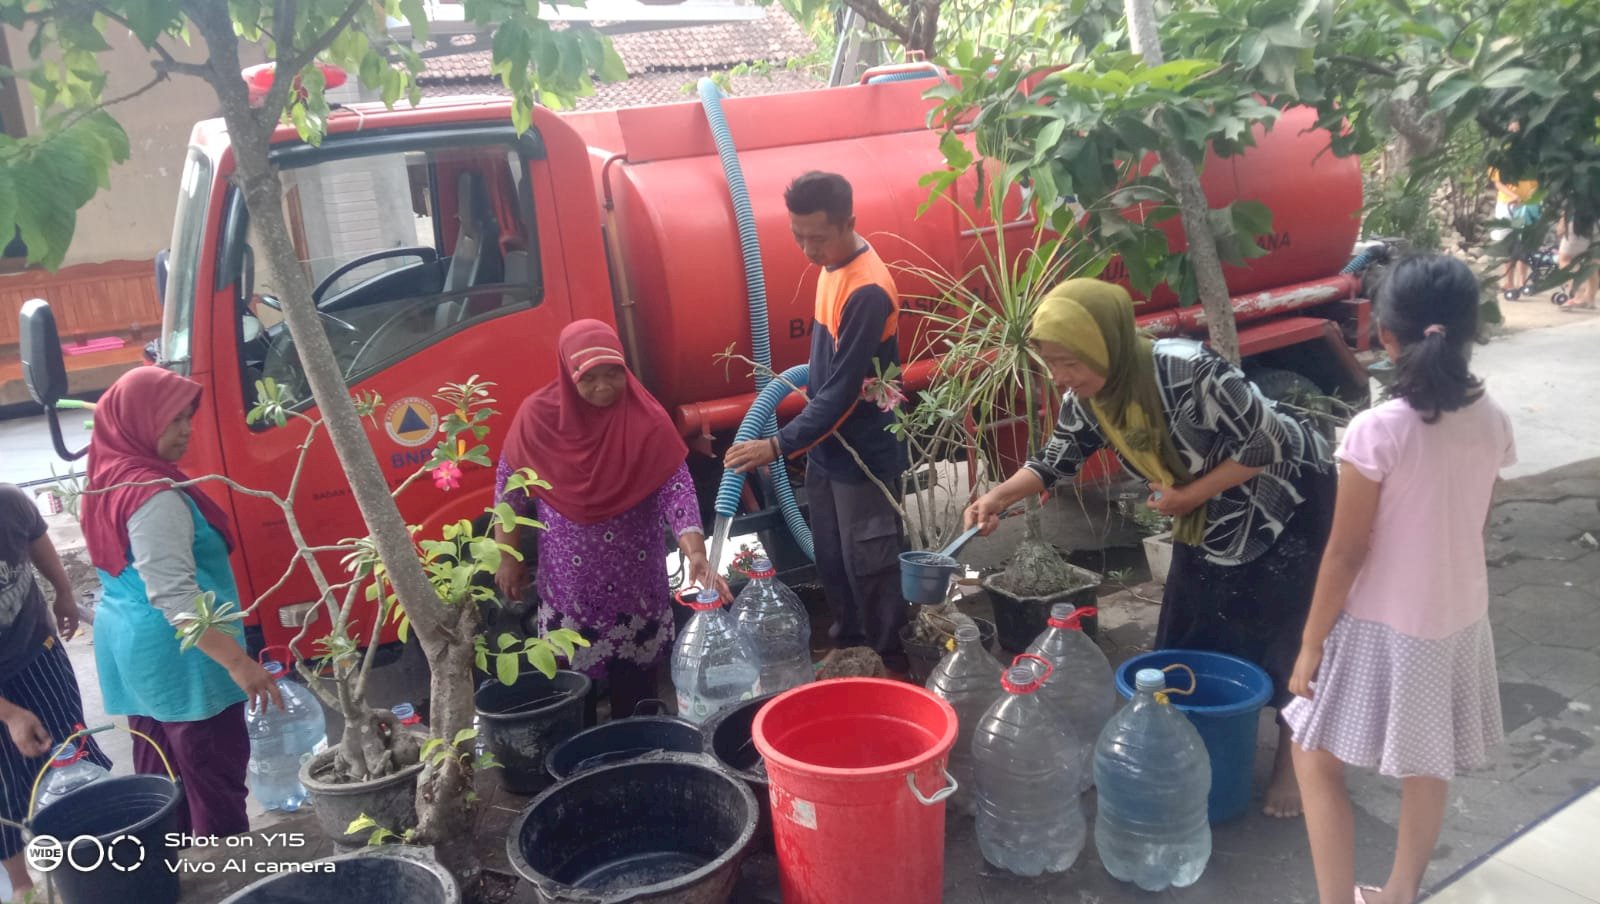 Salurkan Bantuan Air Bersih 10 Tangki ke Desa Terdampak Kekeringan, CSR RSUD Bagas Waras Klaten